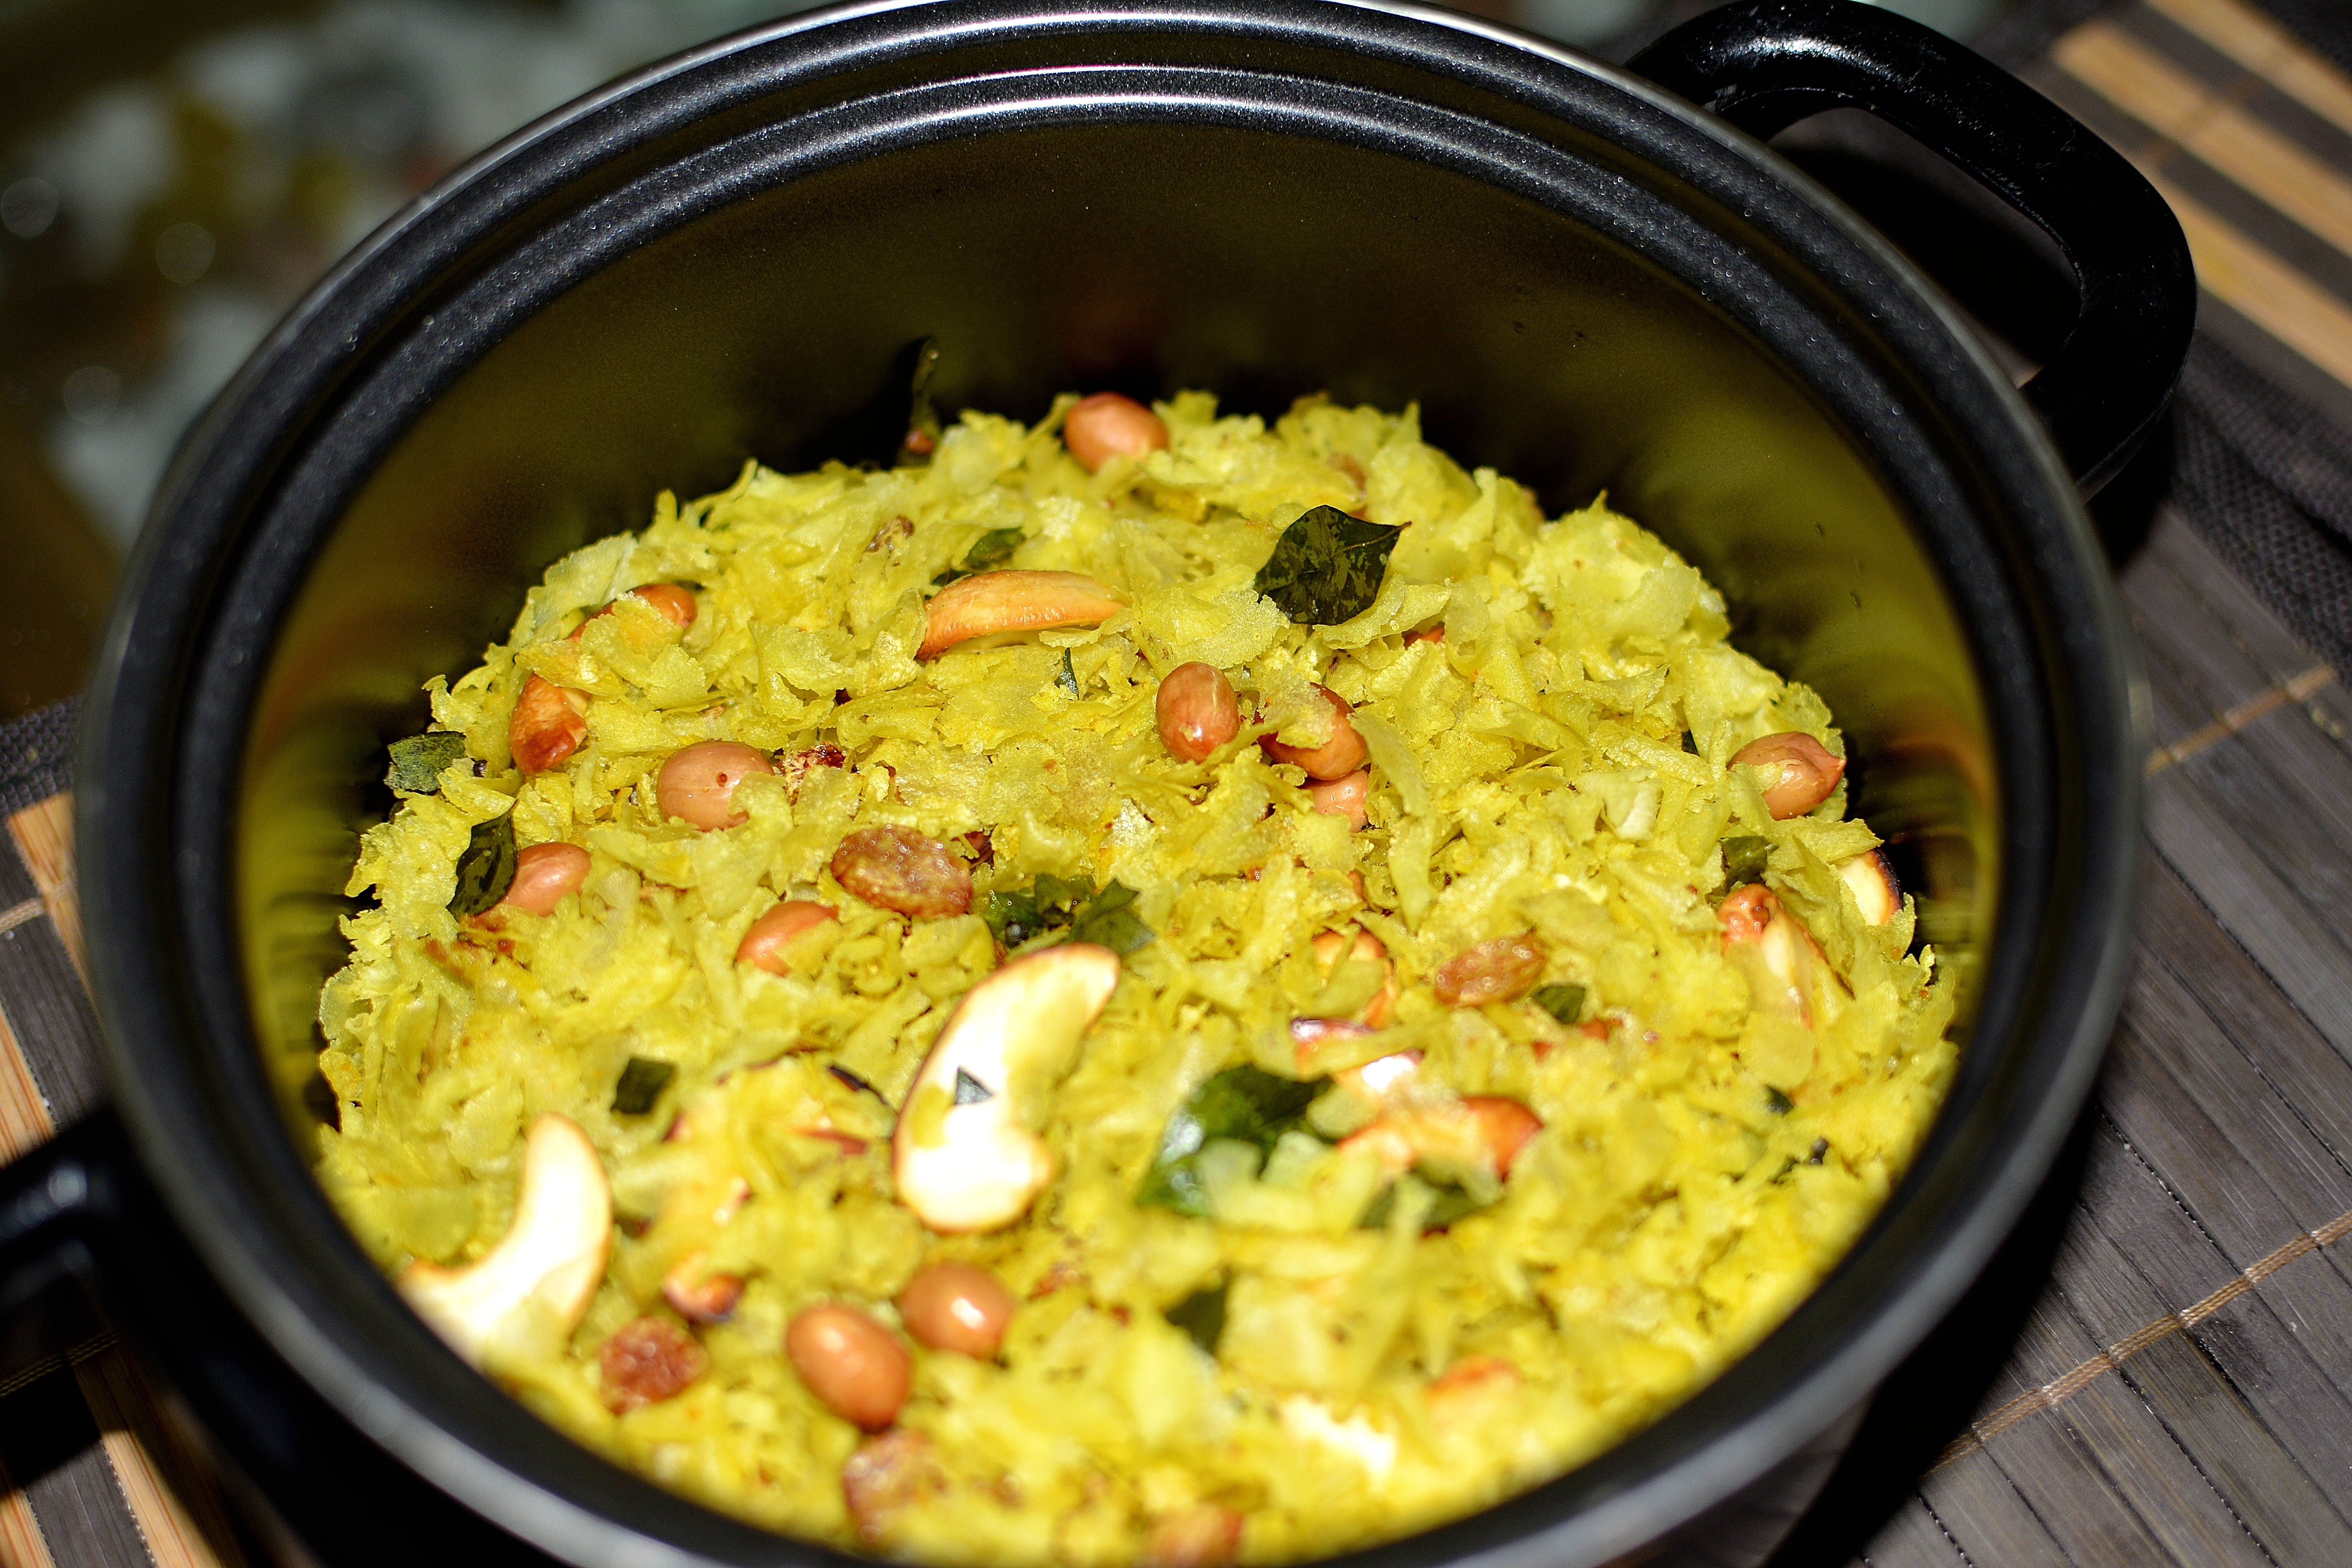 Dish,Cuisine,Food,Ingredient,Pulihora,Produce,Saffron rice,Arroz con pollo,Recipe,Indian cuisine